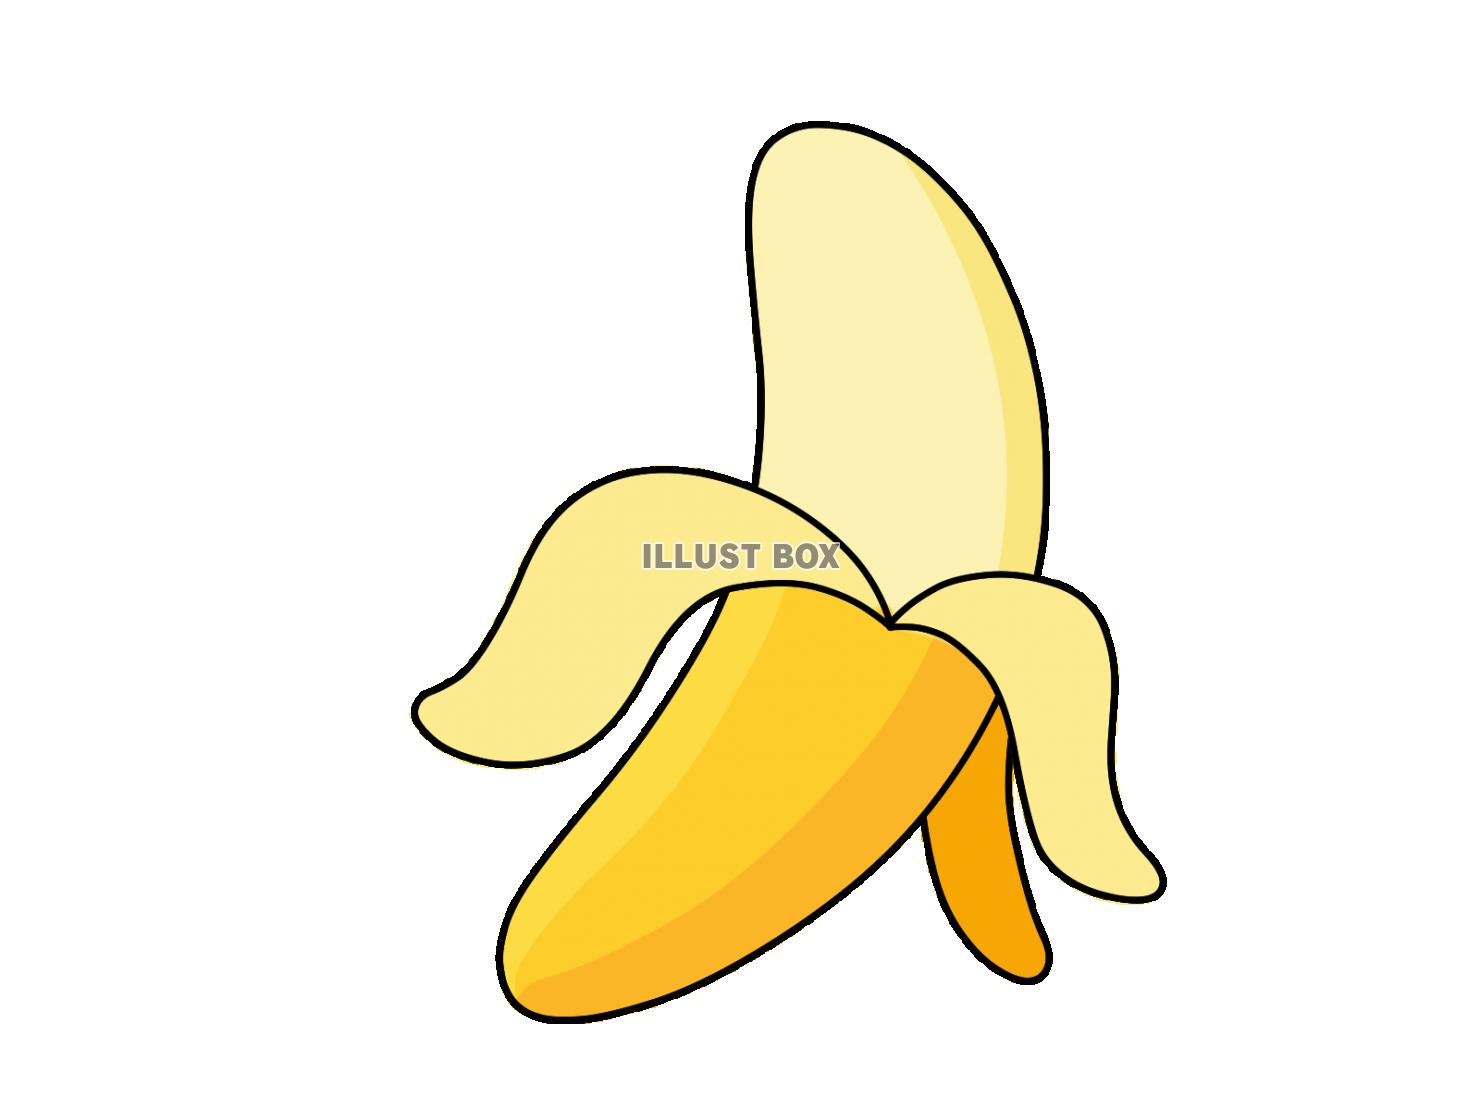 皮をむいたバナナ